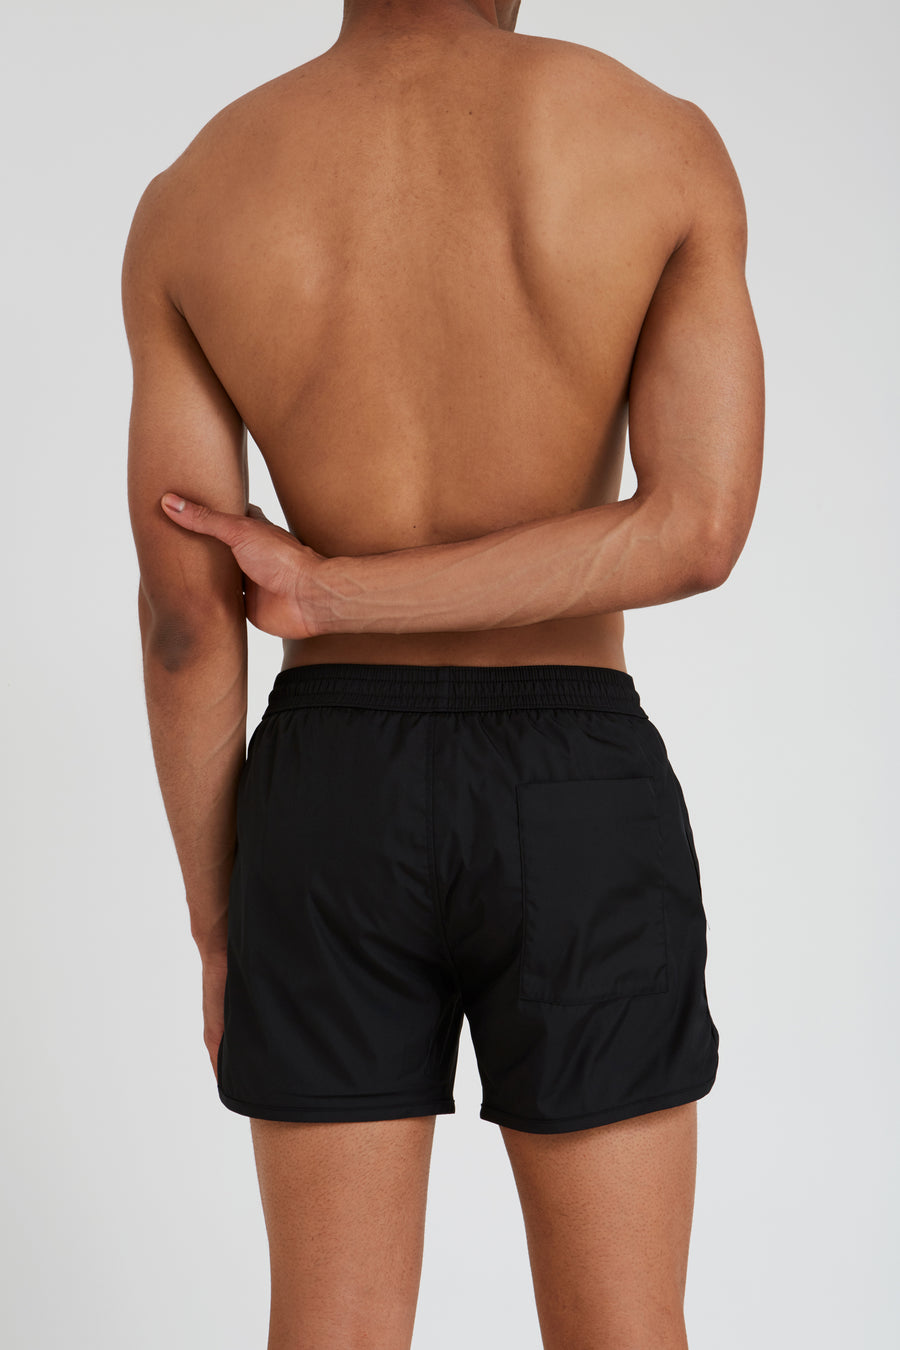 Shorts – boxer 2, black